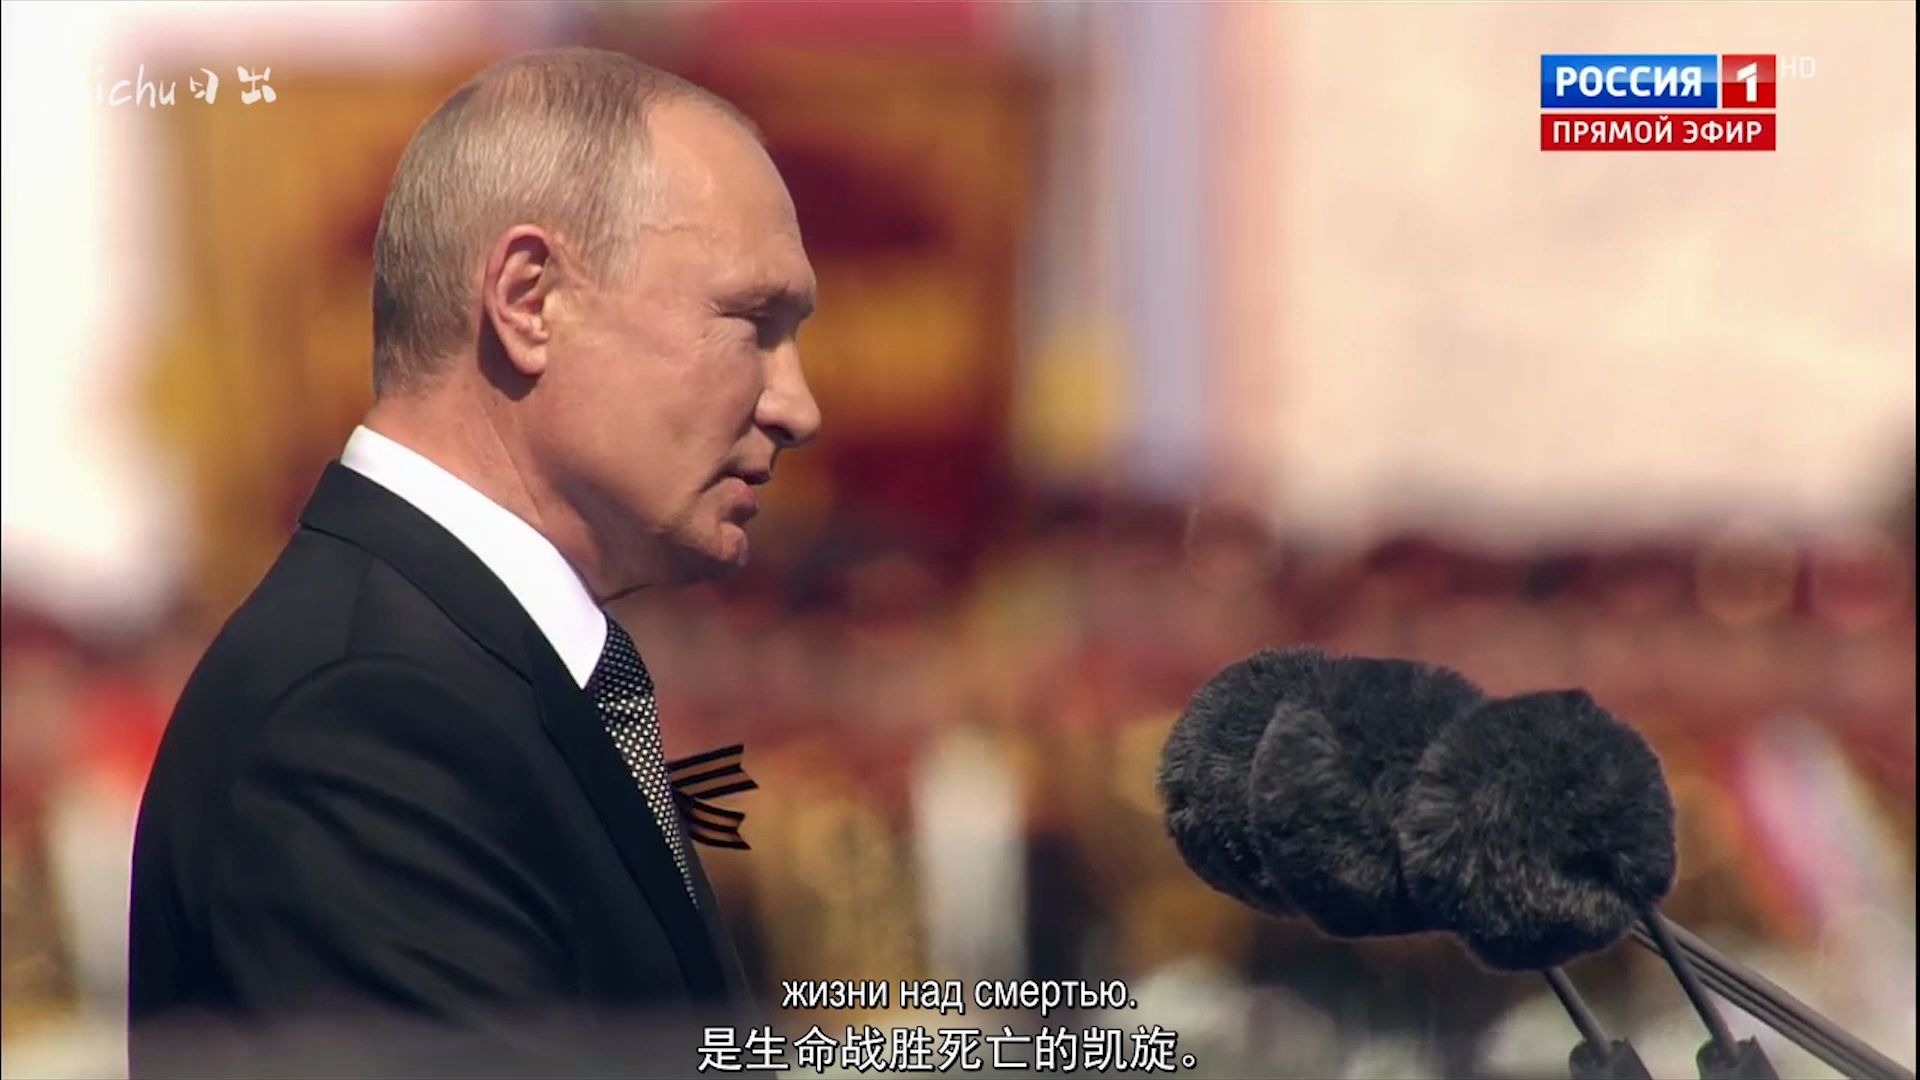 5月9日红场举行胜利日阅兵，总统普京发表胜利日讲话 - 小狮座俄罗斯留学